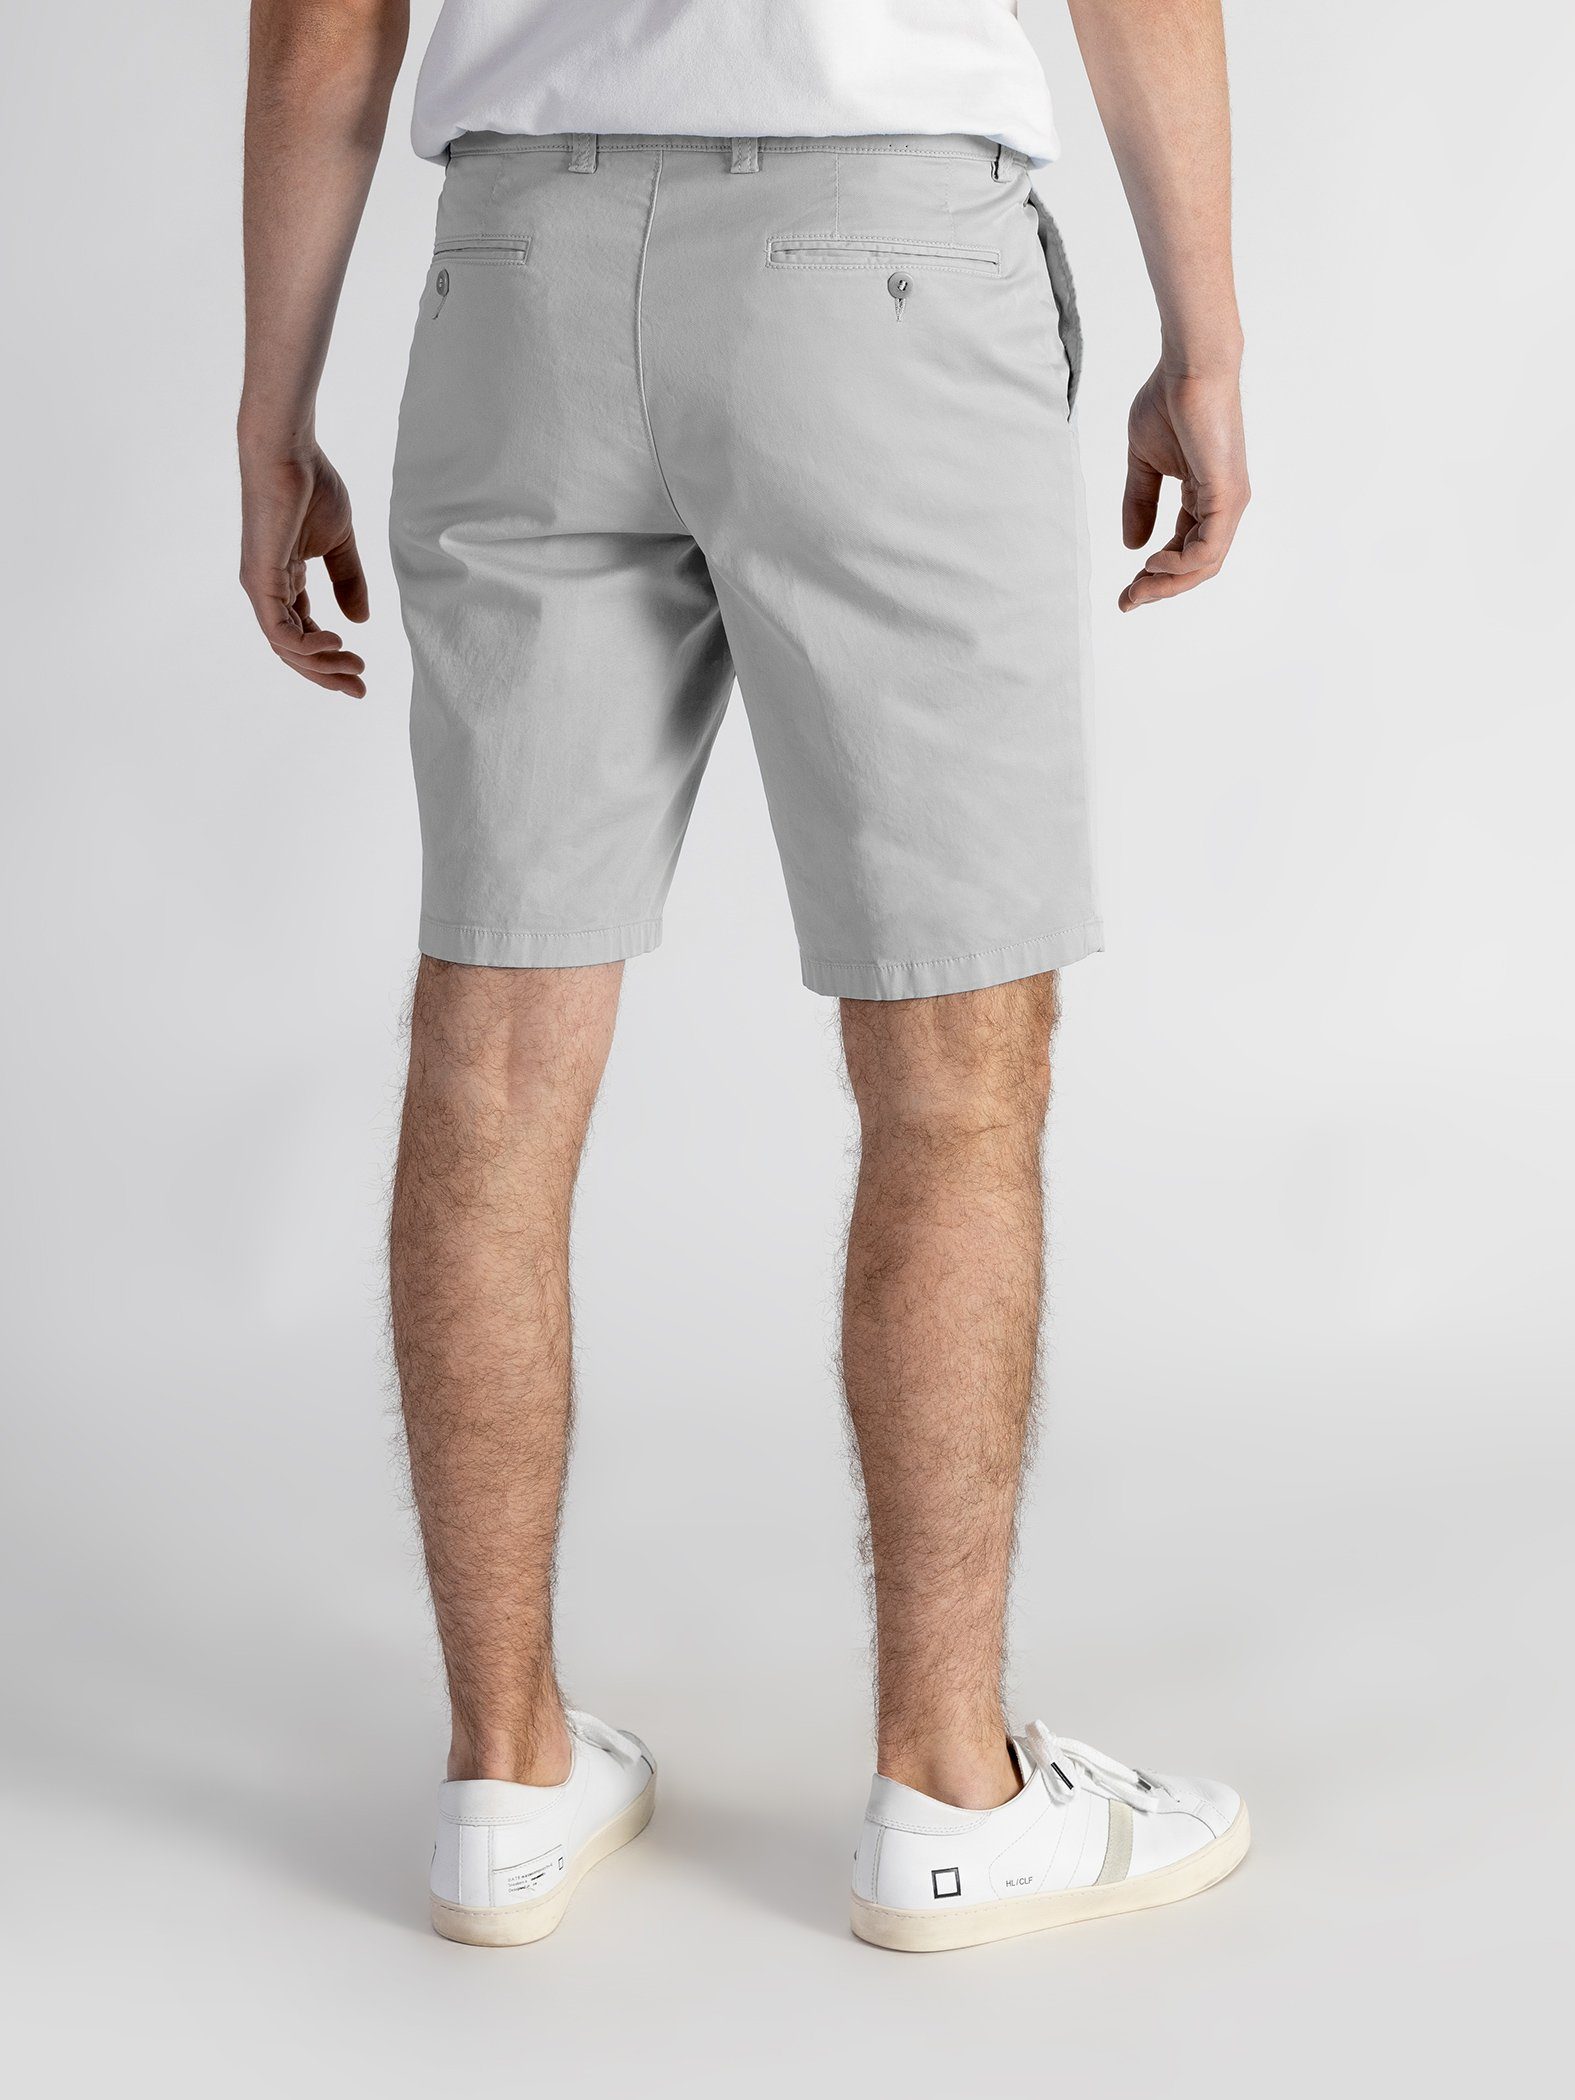 TwoMates Shorts Shorts elastischem hellgrau Farbauswahl, GOTS-zertifiziert mit Bund